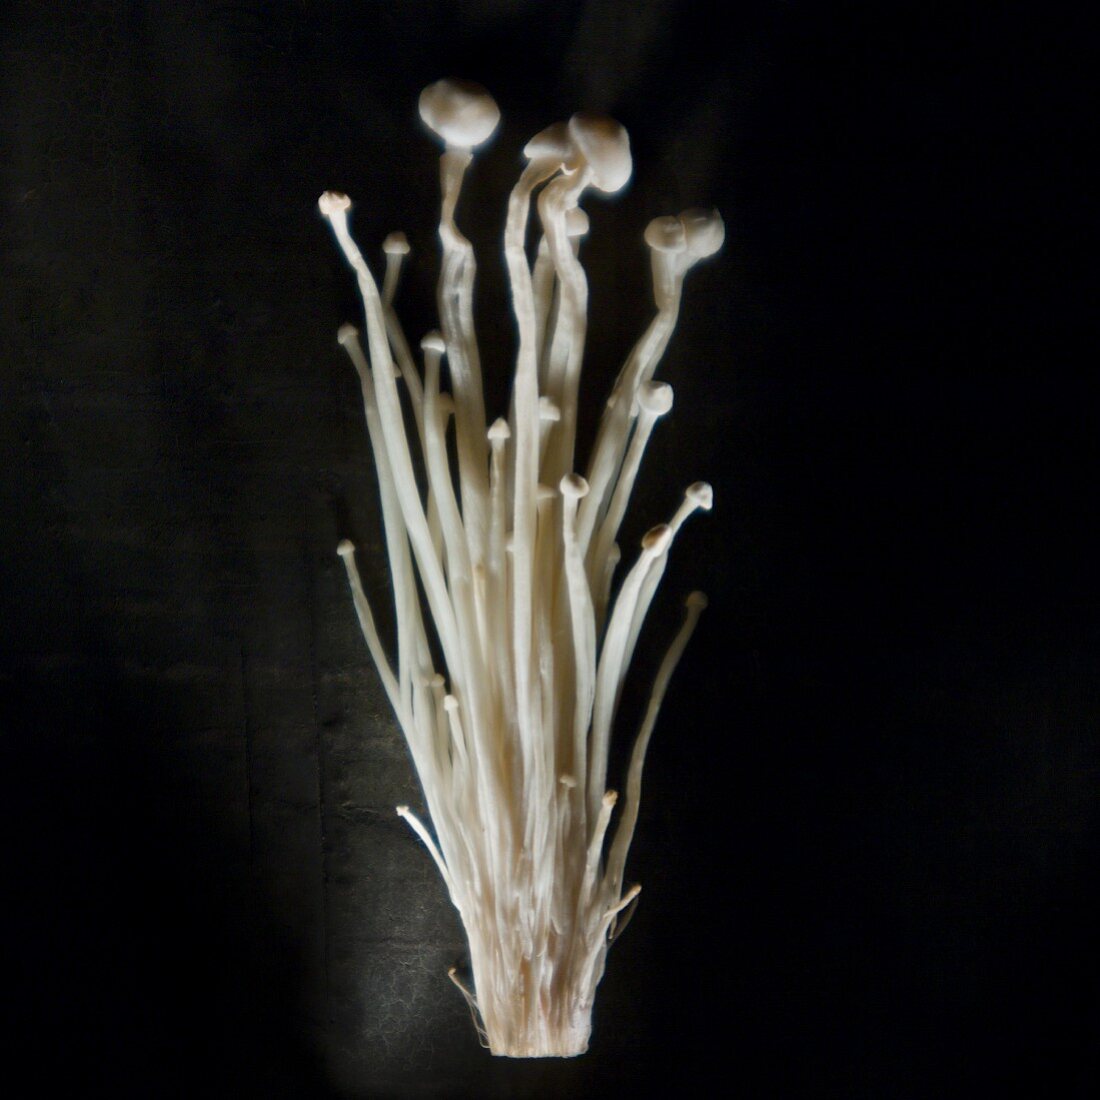 Velvet stem mushrooms (Enoki)